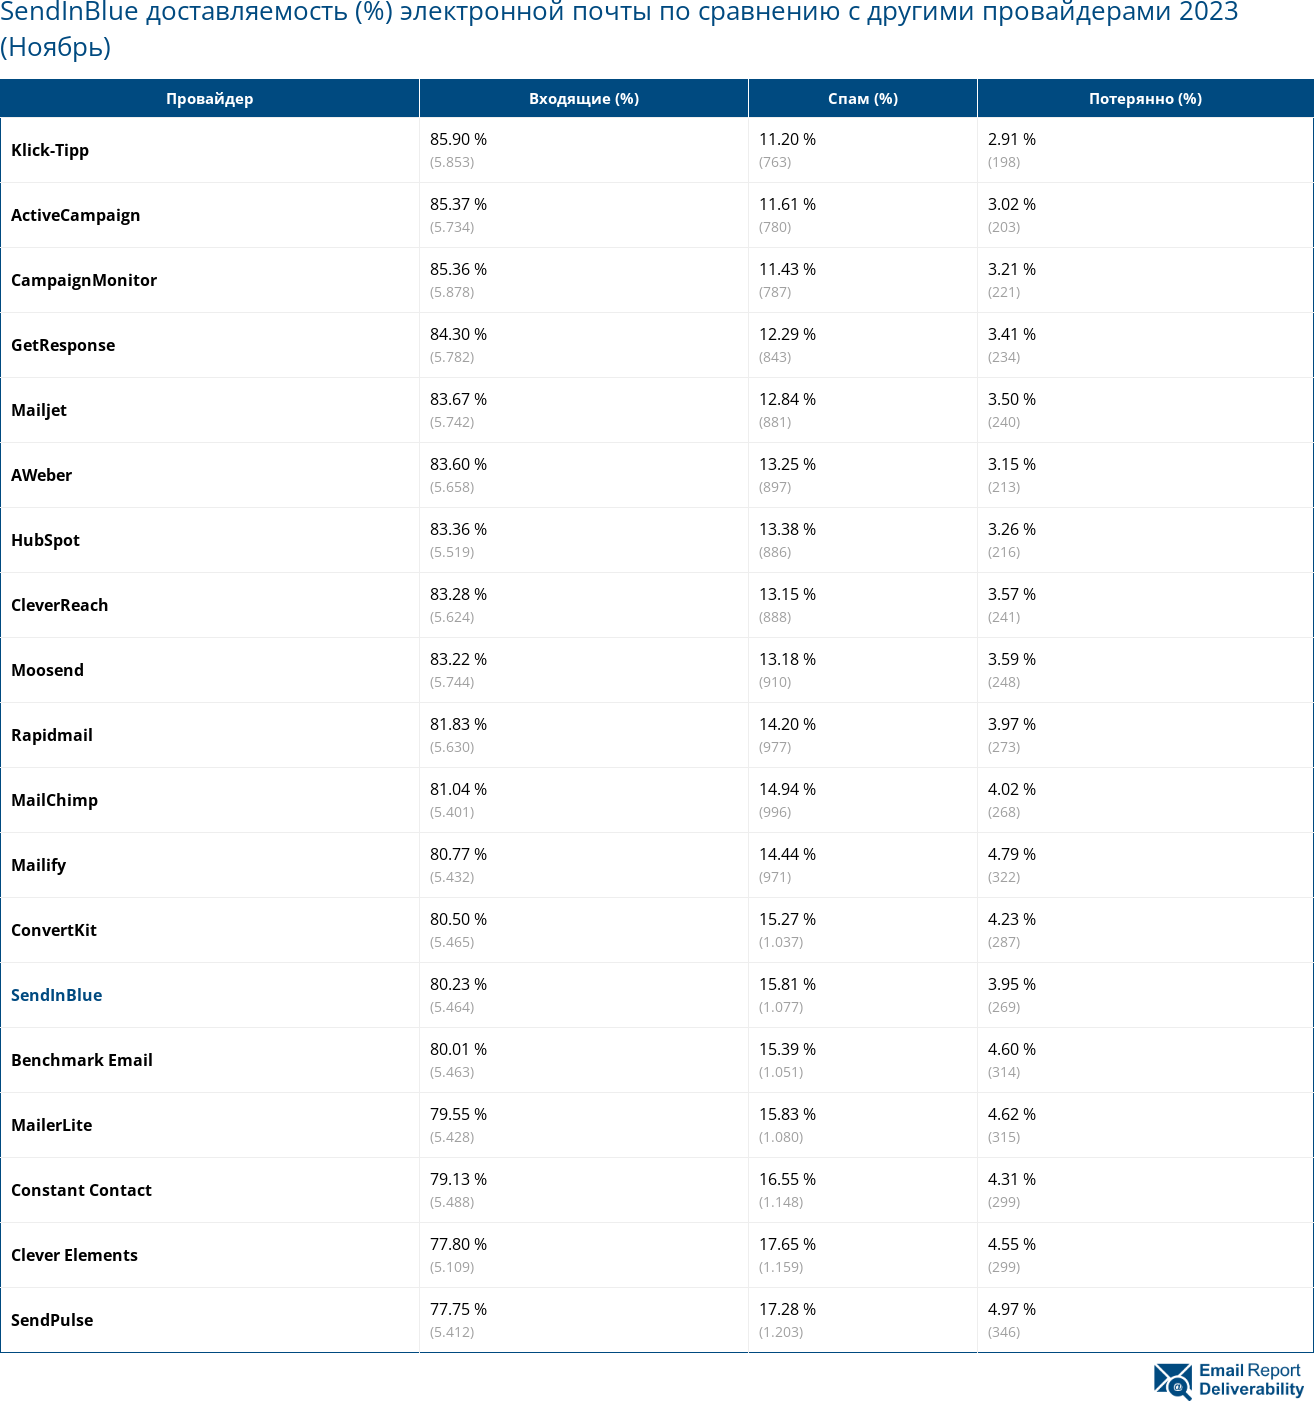 SendInBlue доставляемость (%) электронной почты по сравнению с другими провайдерами 2023 (Ноябрь)